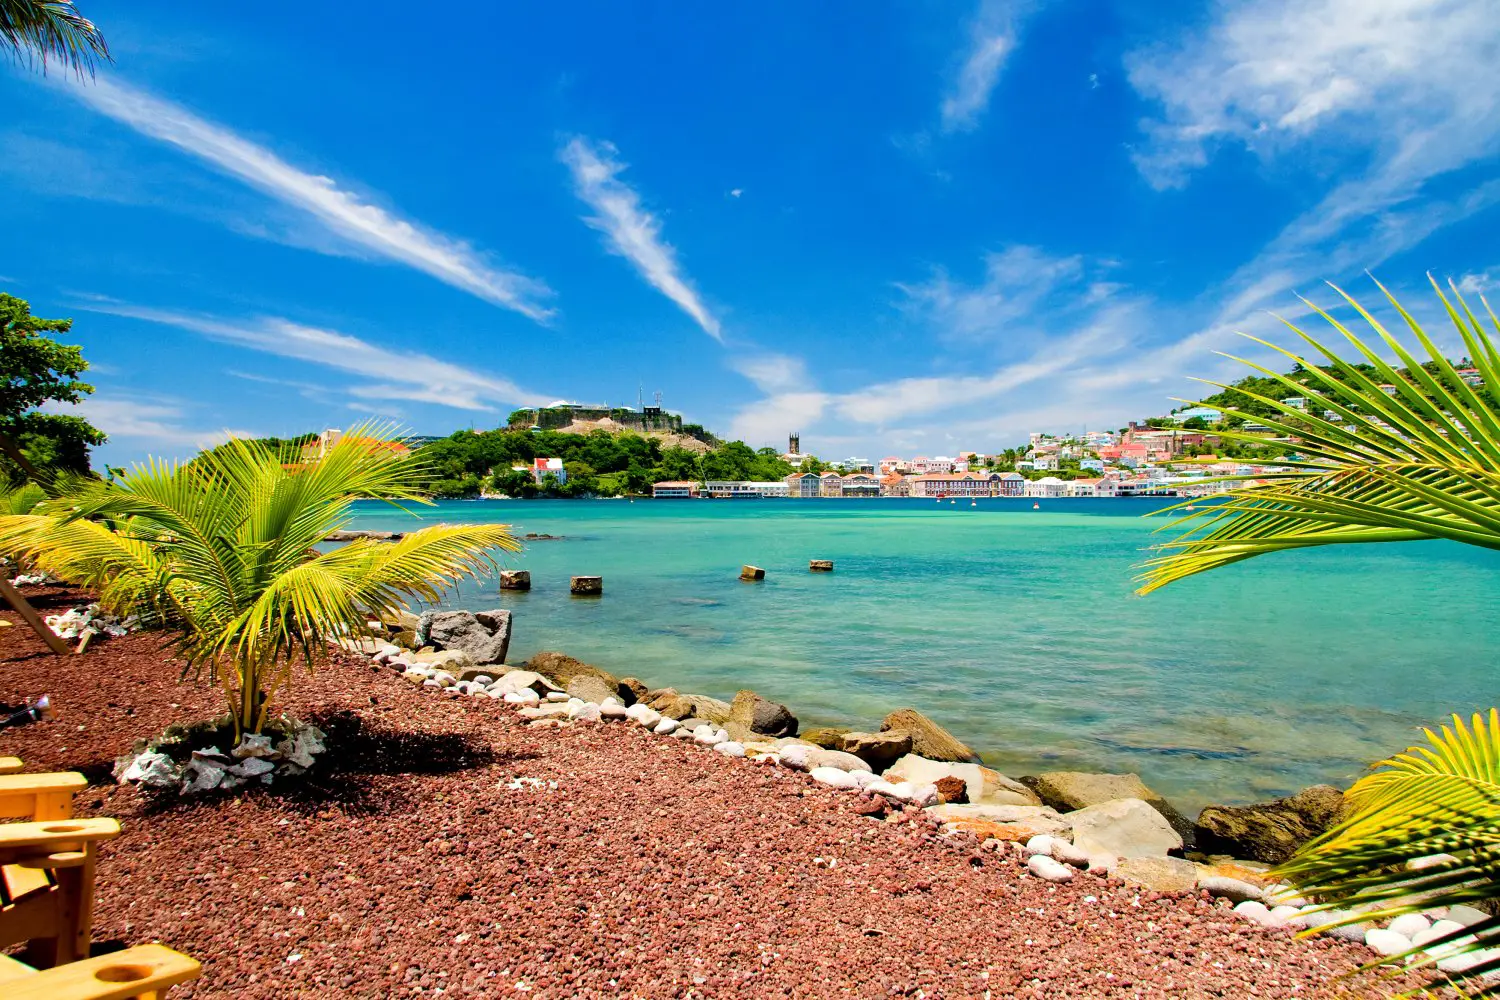 Grenada. Calatorie in Marea Caraibilor catre taramul imbietoarelor mirodenii